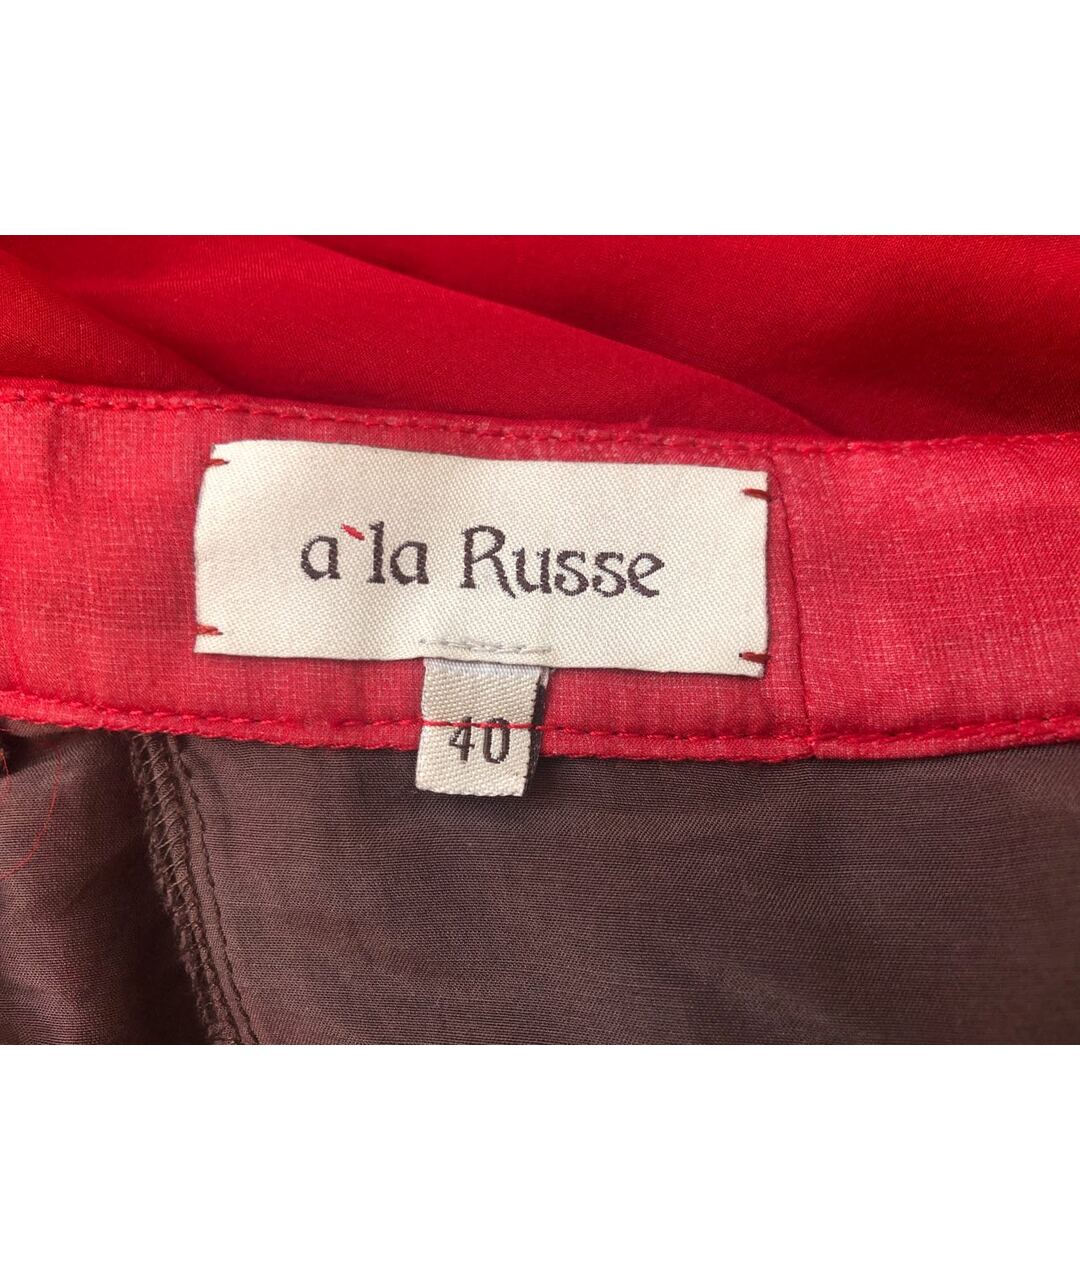 A LA RUSSE Бордовая шелковая юбка макси, фото 2